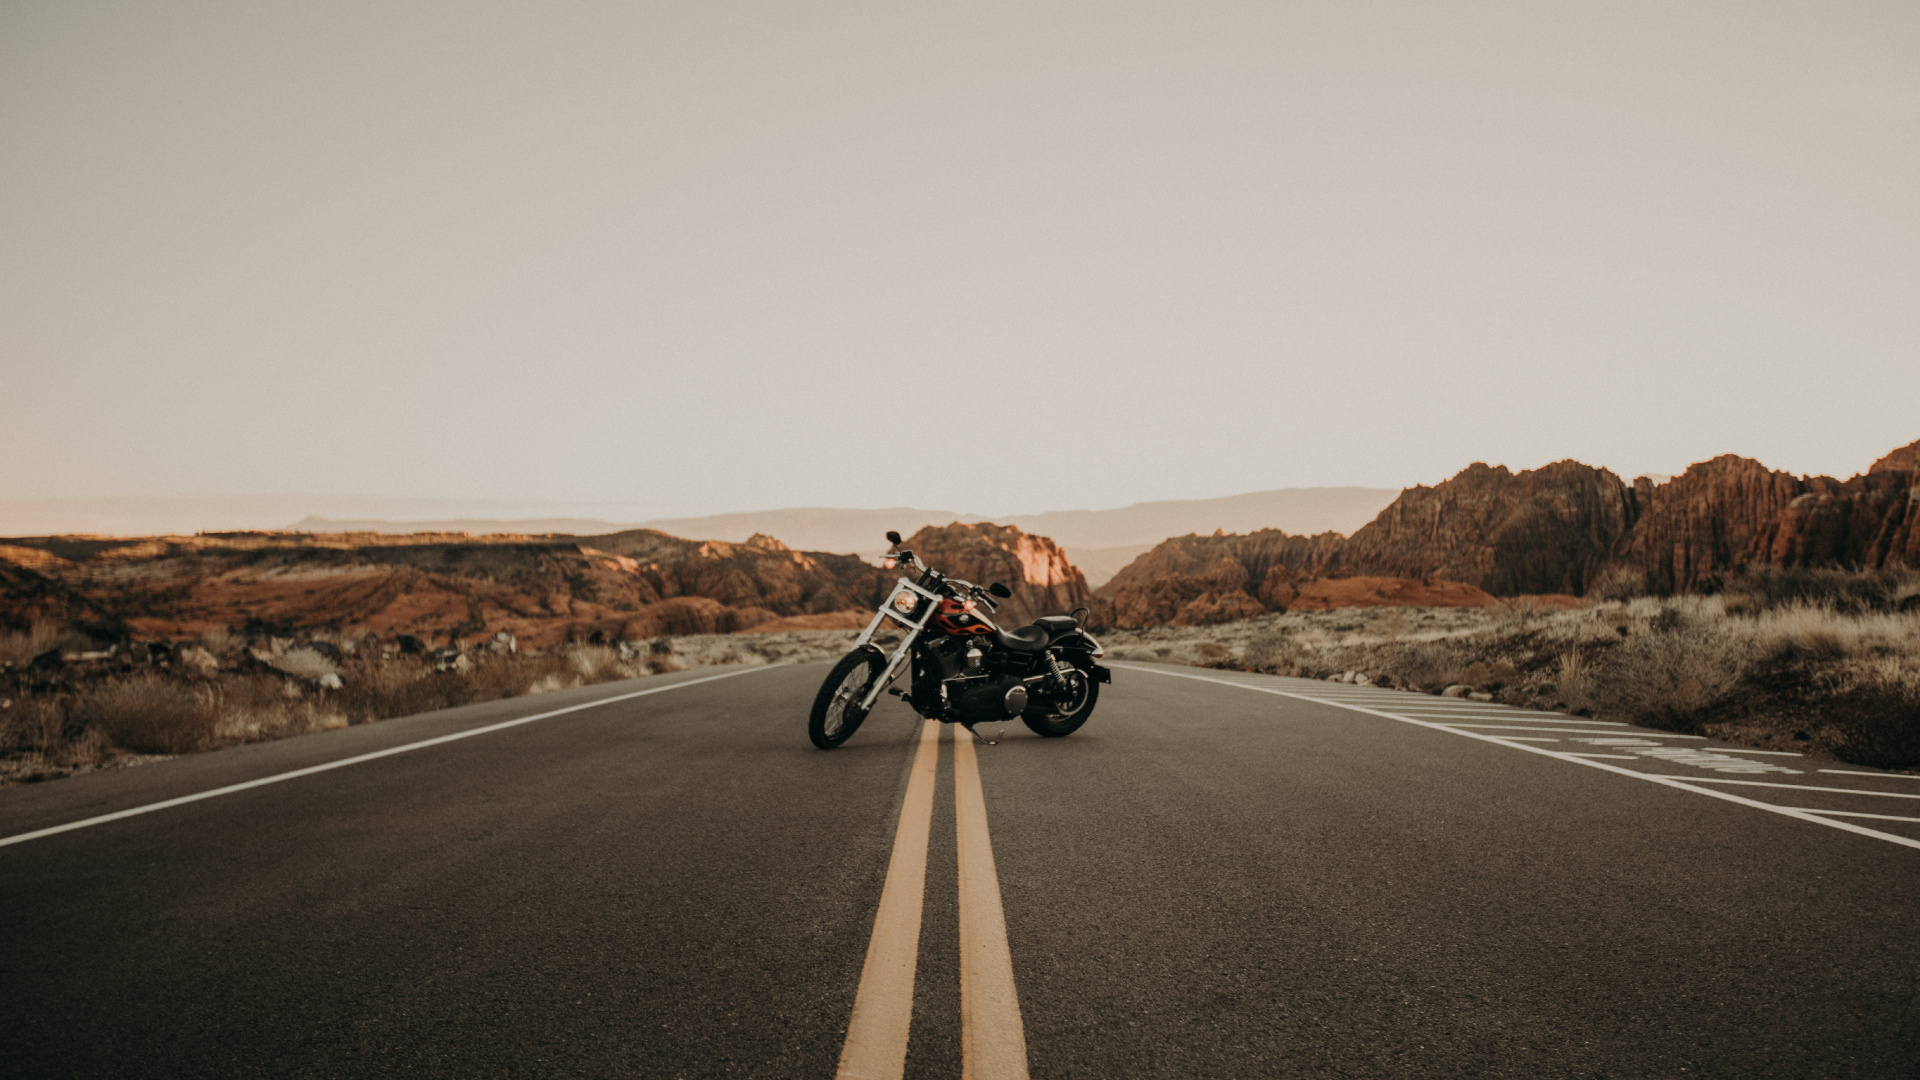 Motocicleta en Blanco y Negro en la Carretera Durante el Día. Wallpaper in 1920x1080 Resolution